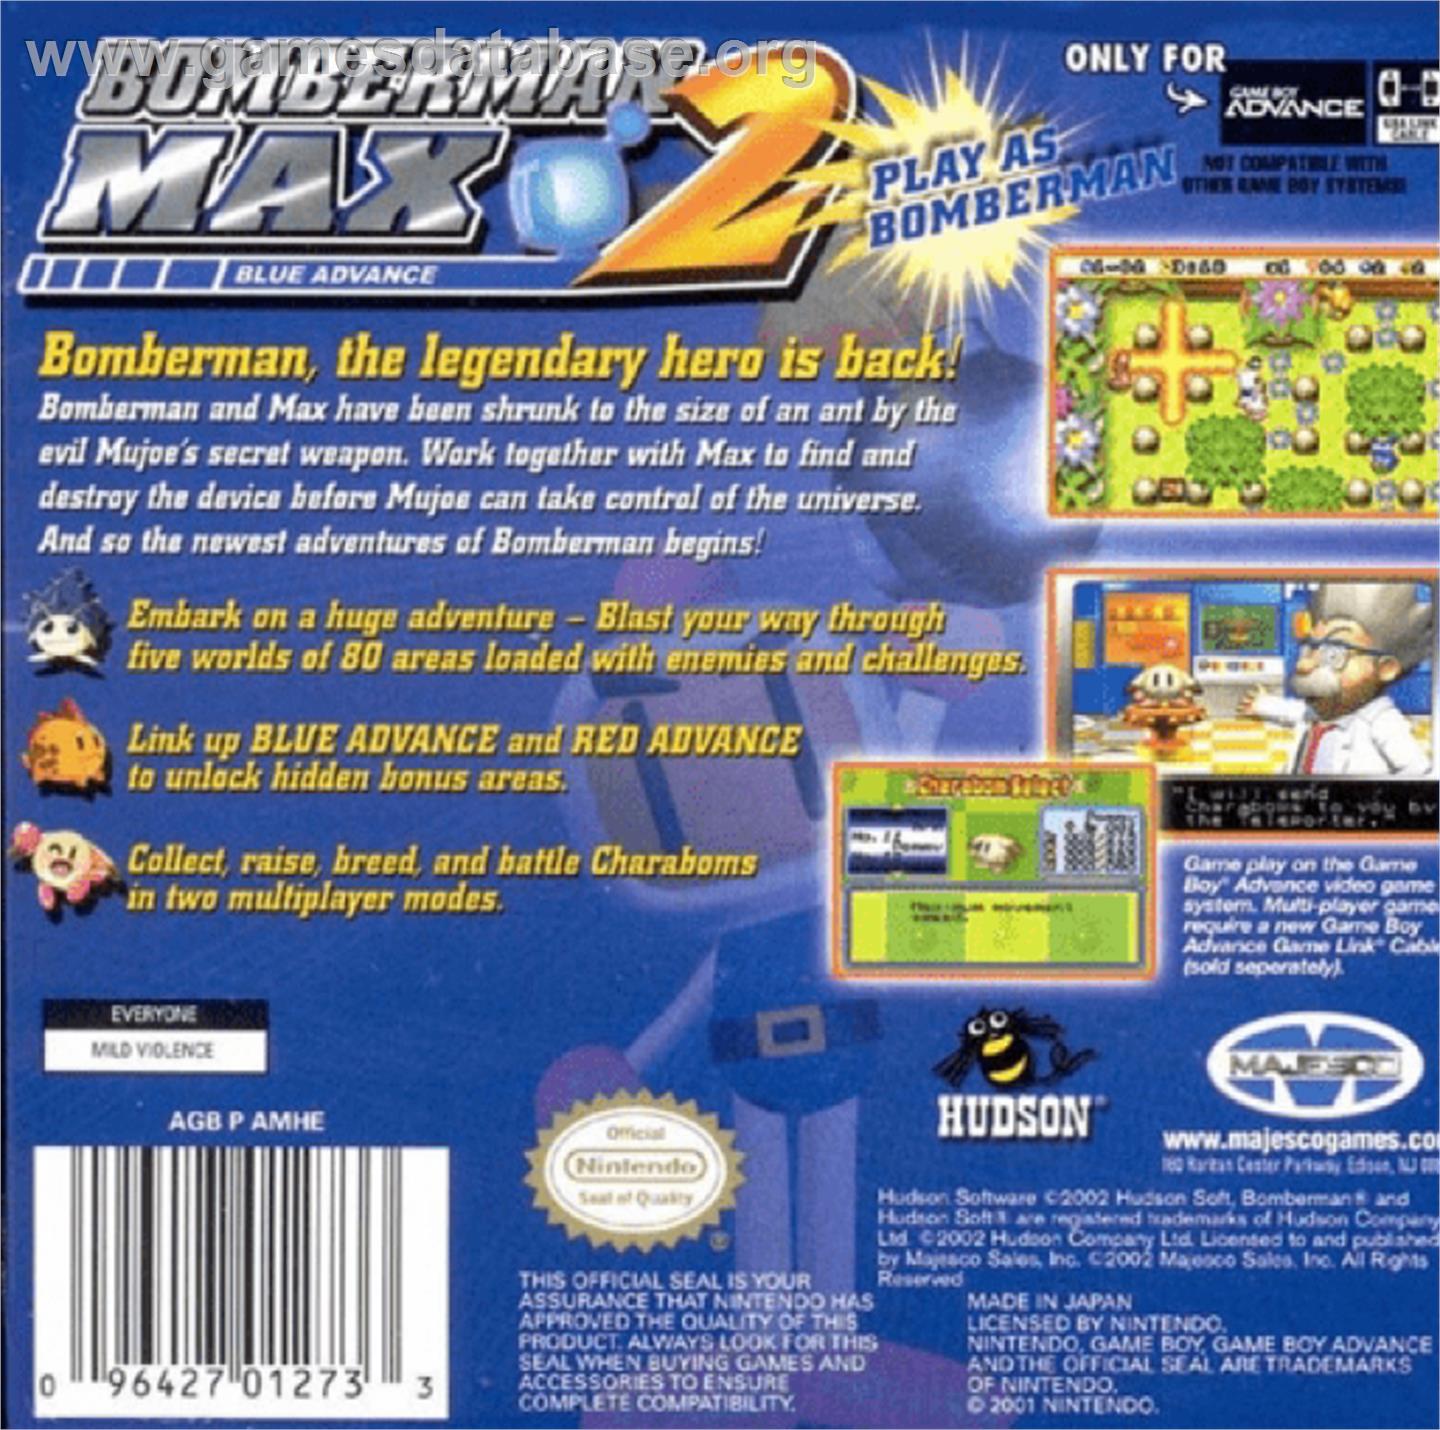 Bomberman Max 2: Blue Advance - Nintendo Game Boy Advance - Artwork - Box Back